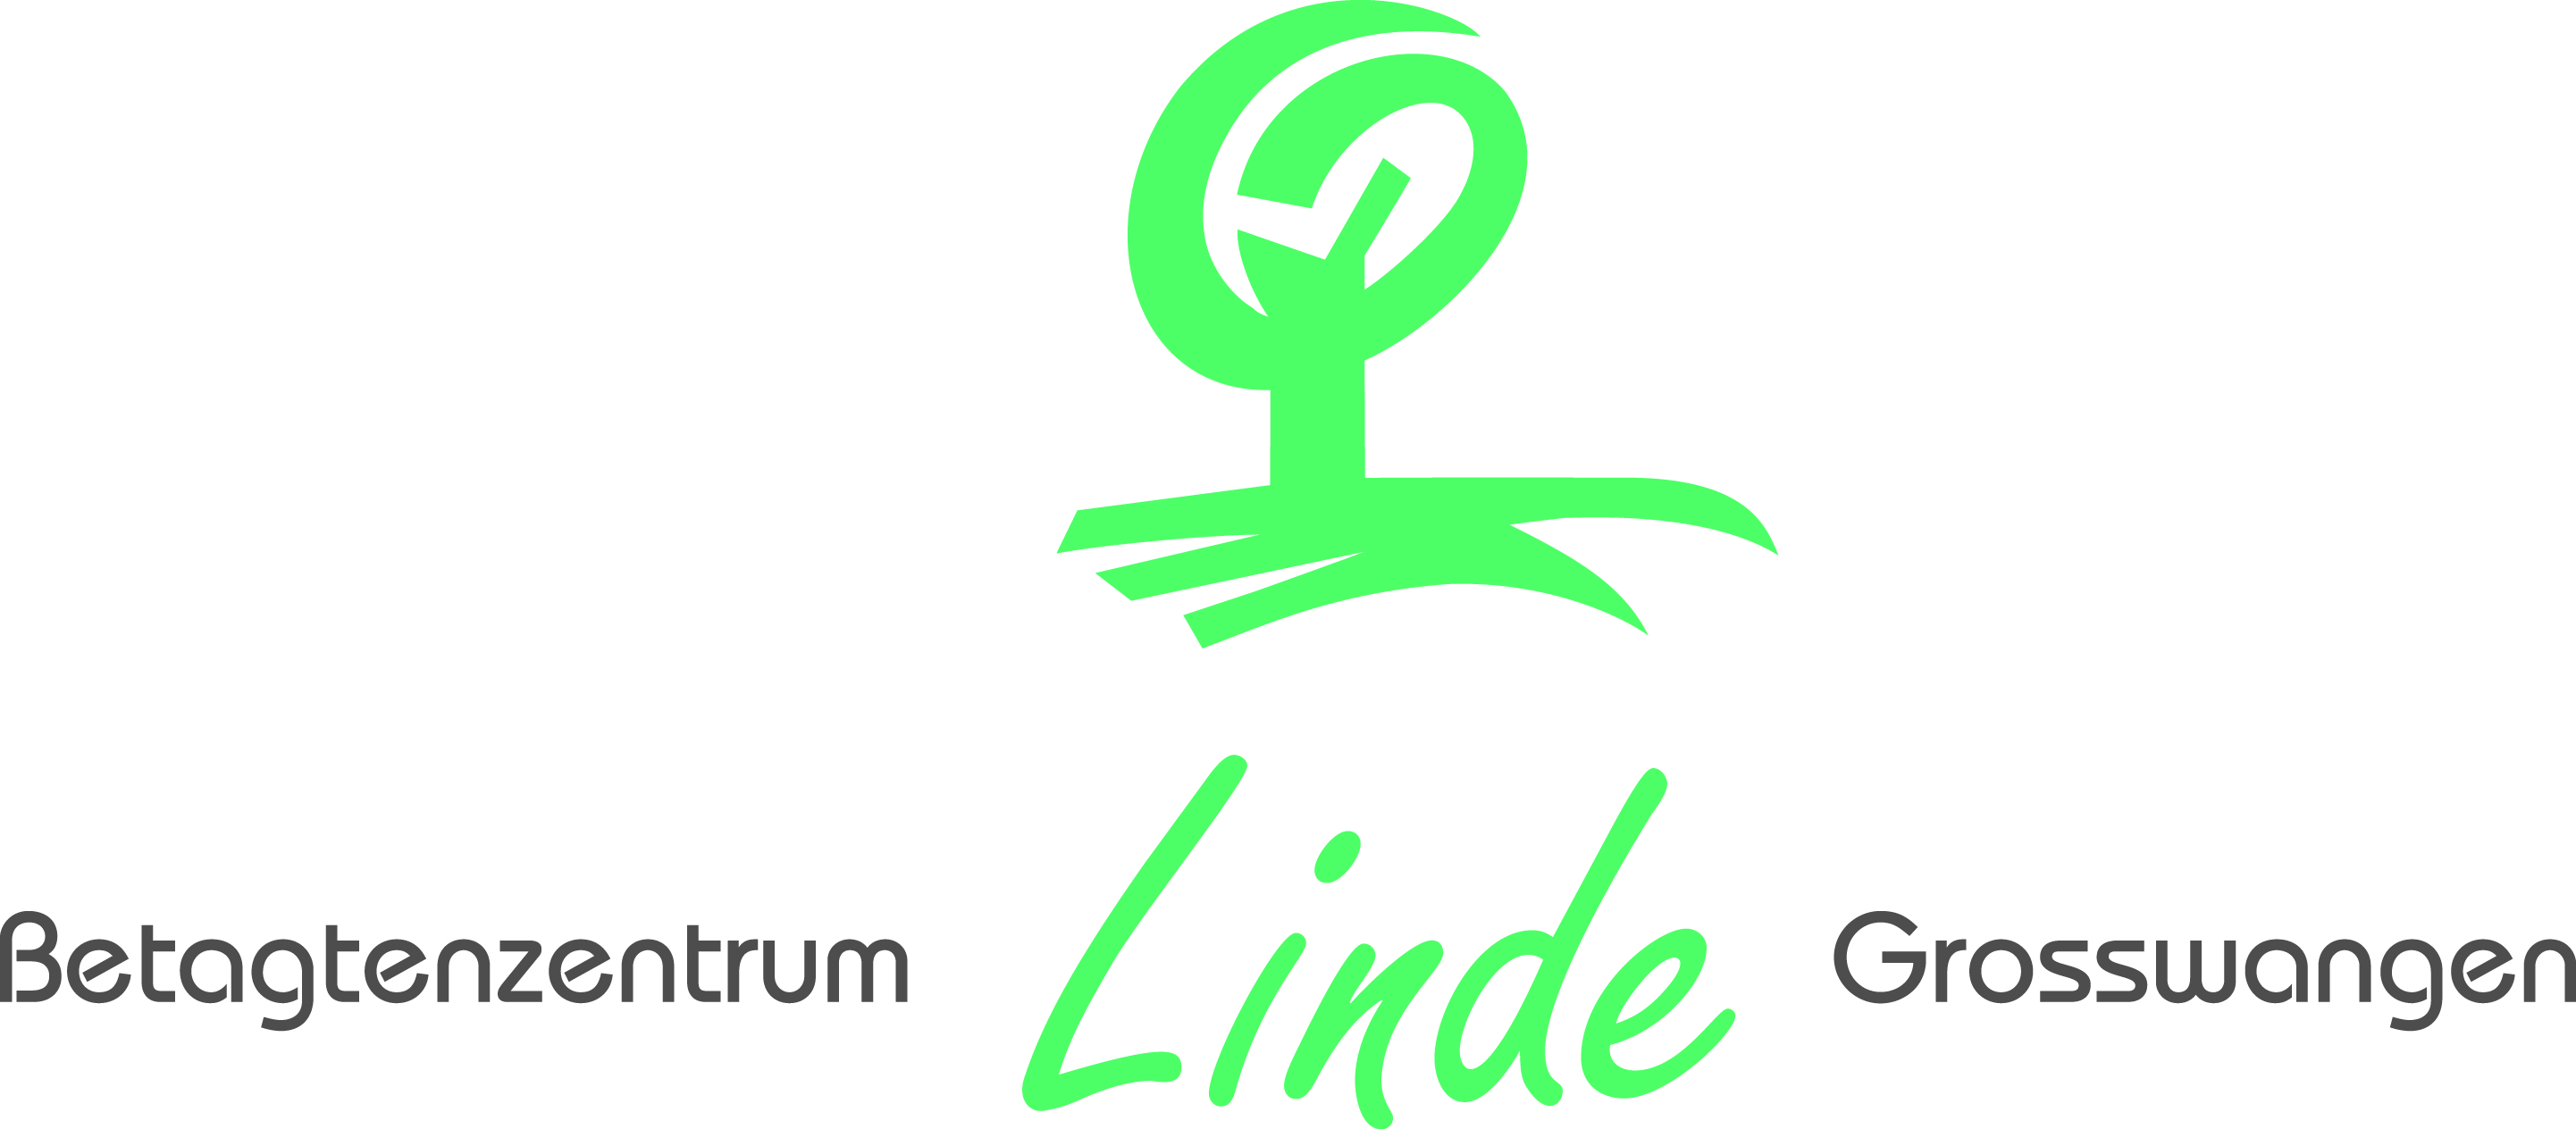 Betagtenzentrum Linde Logo